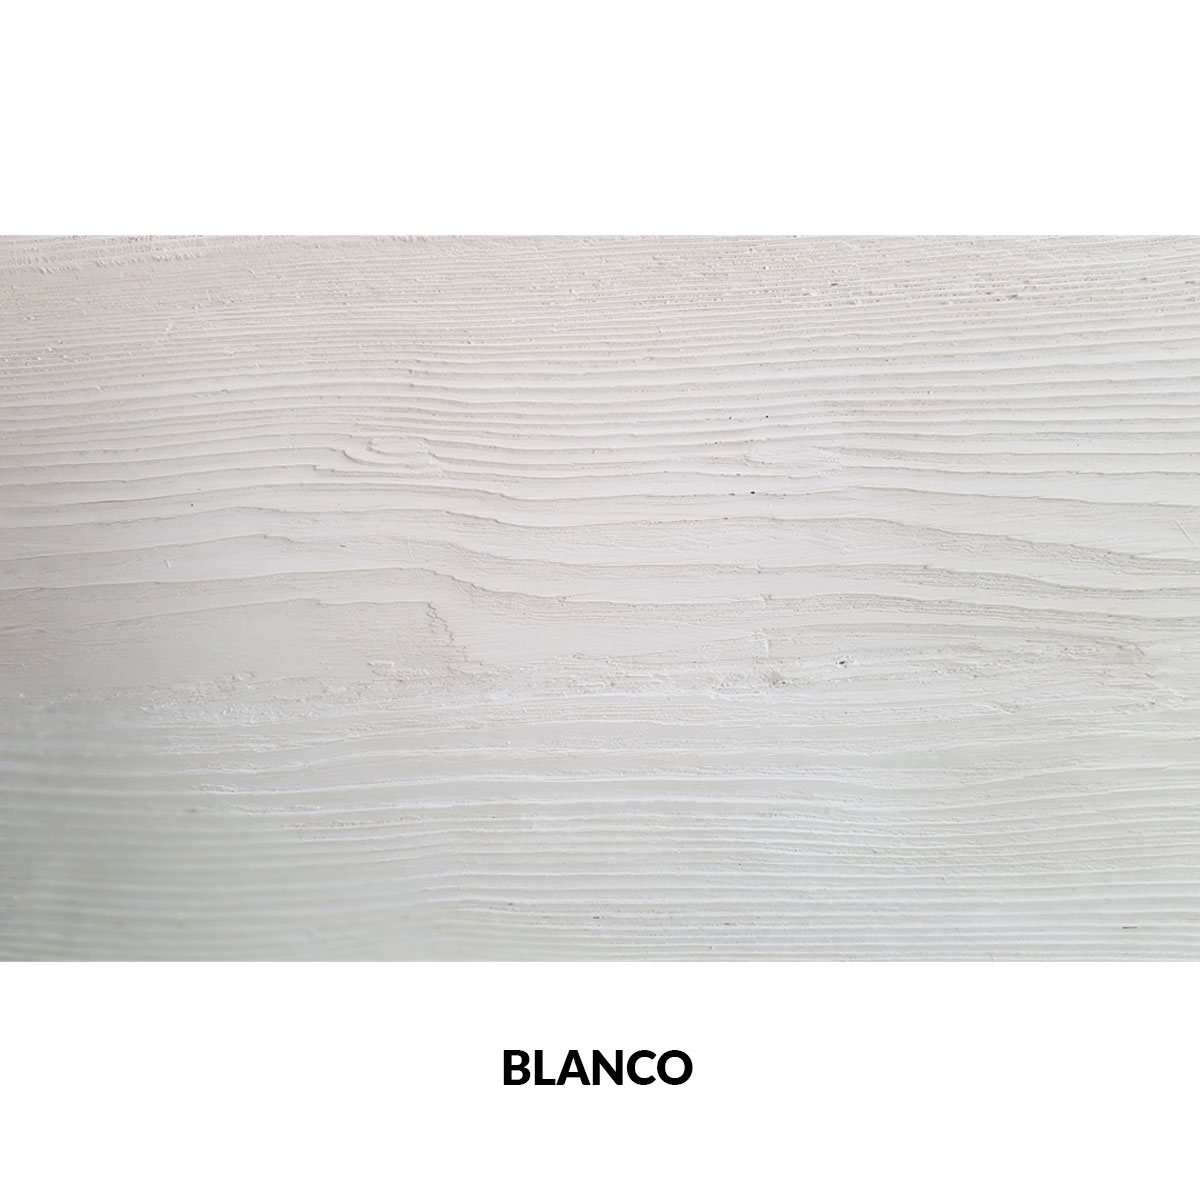 Panel rústico de tres lamas imitación madera de 300x62cm blanco